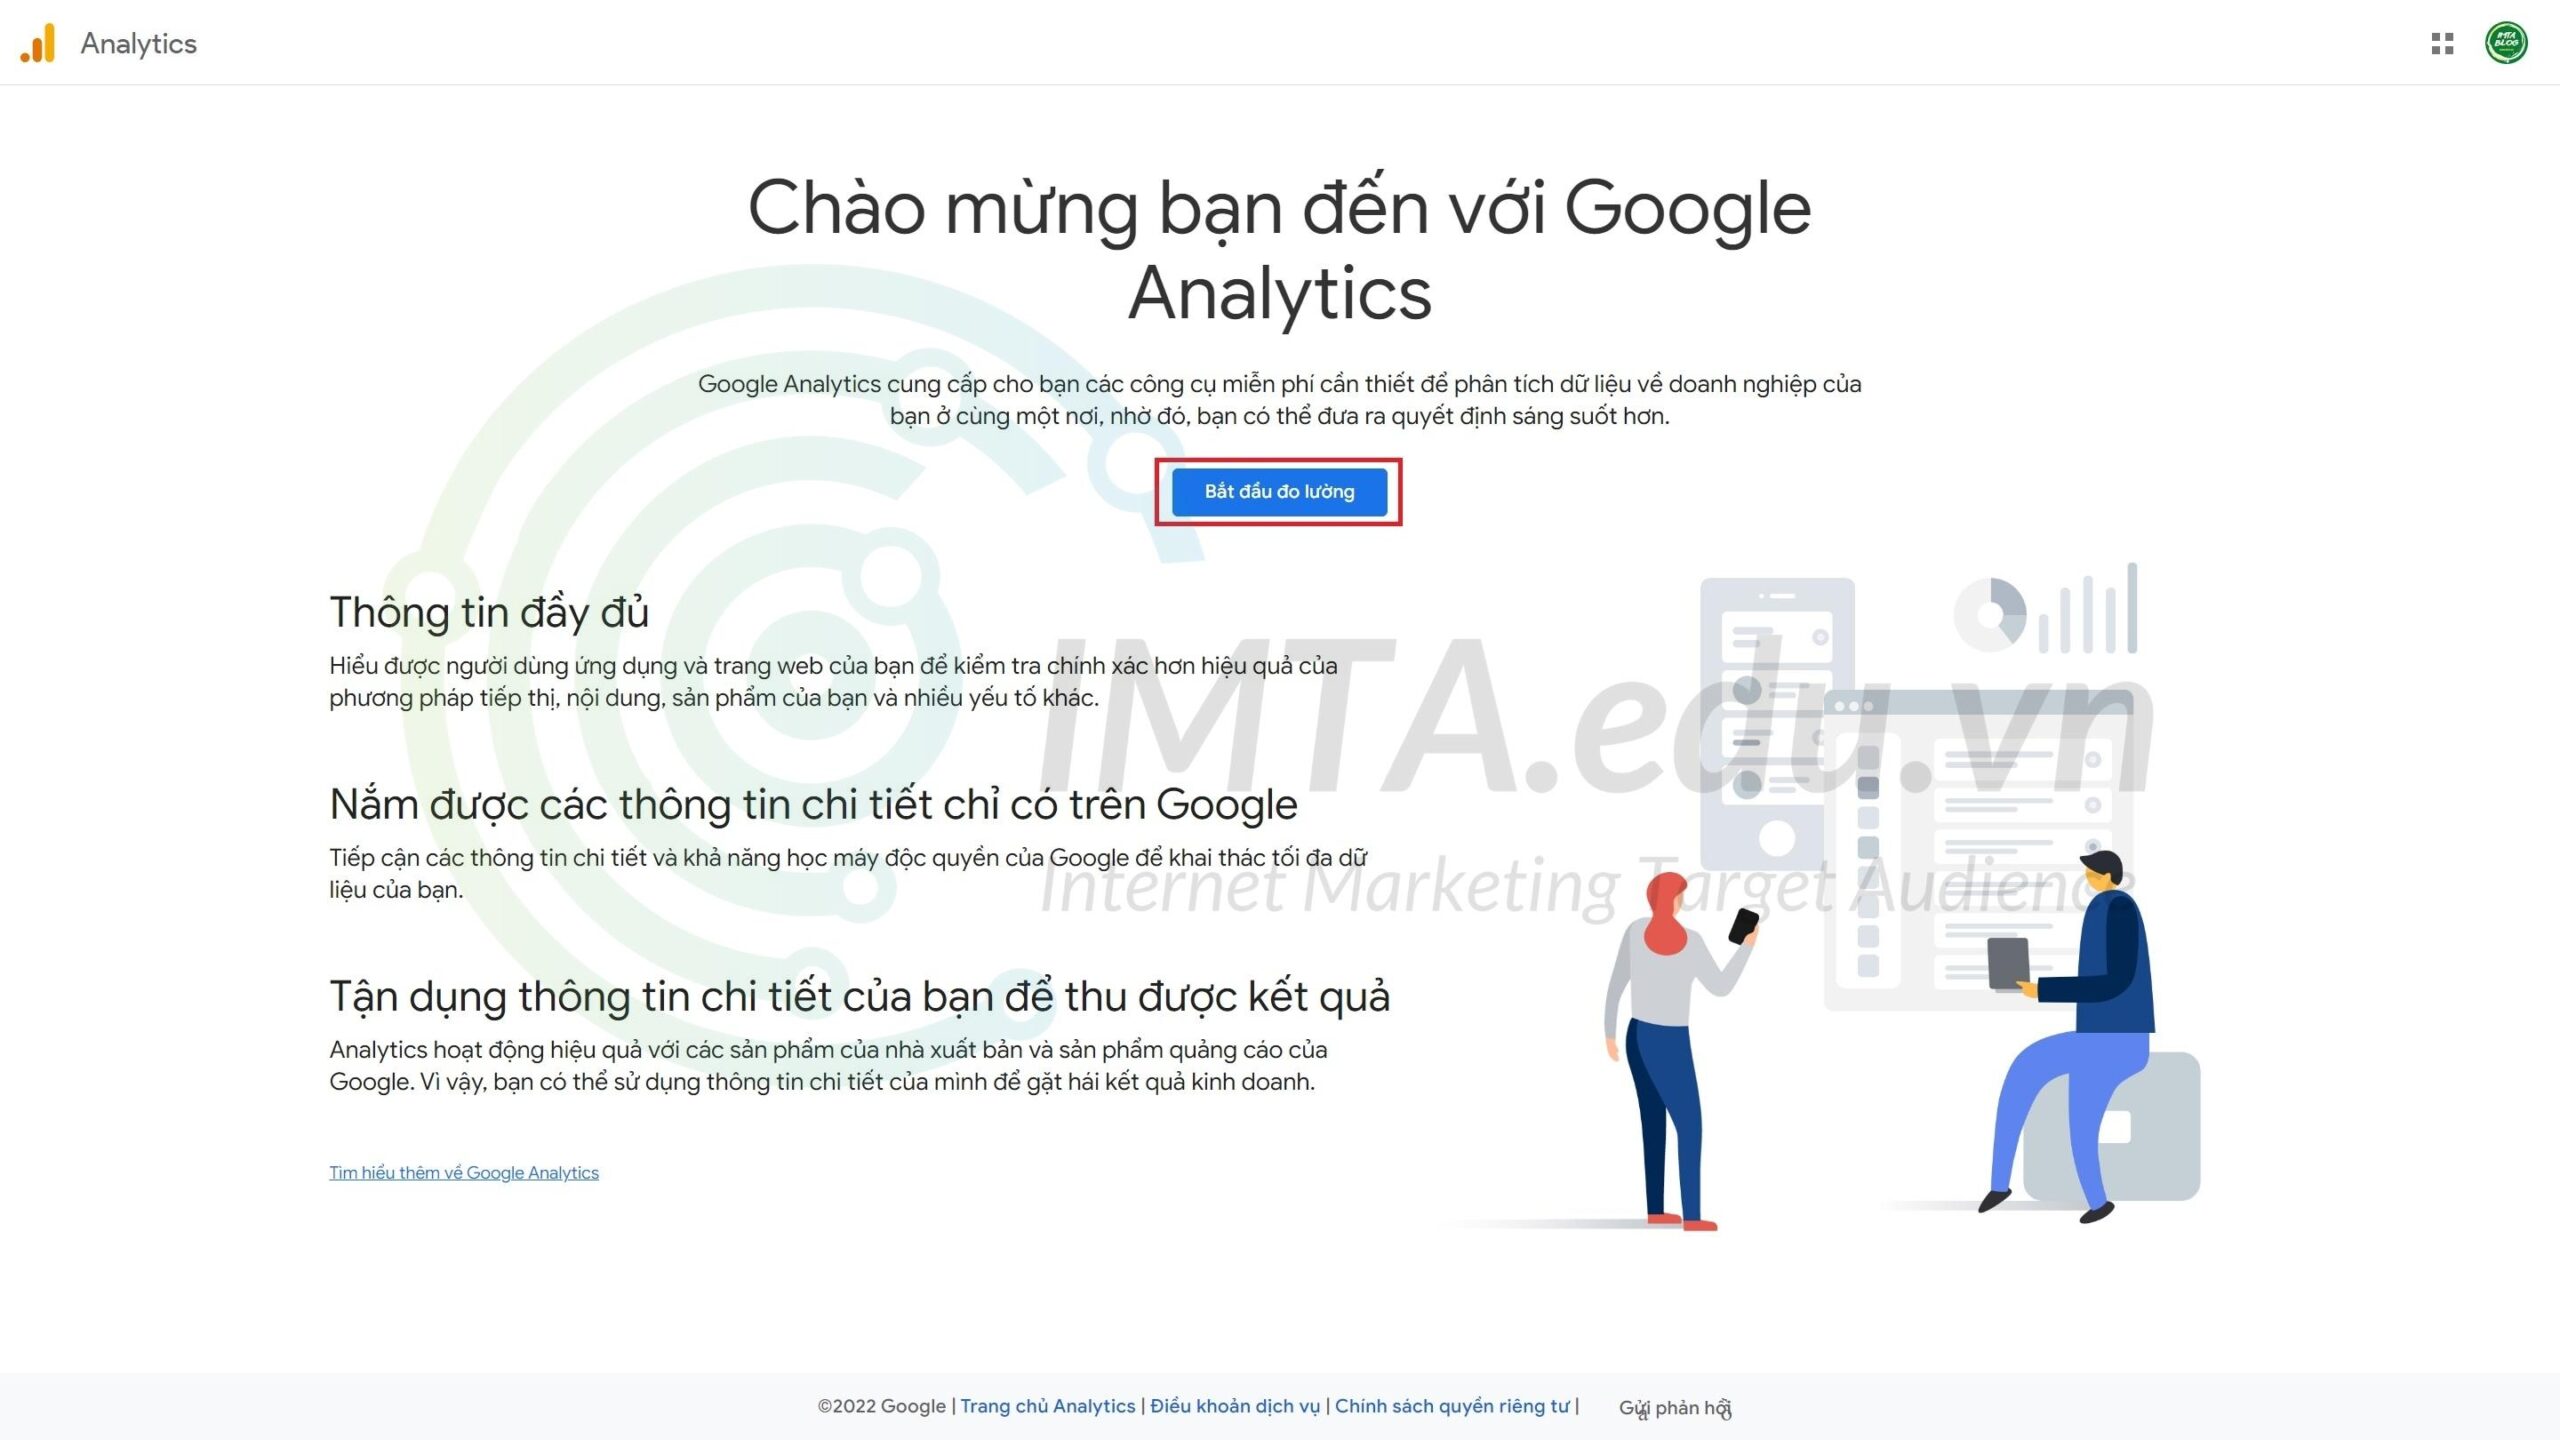 Trang chào mừng của Google Analytics